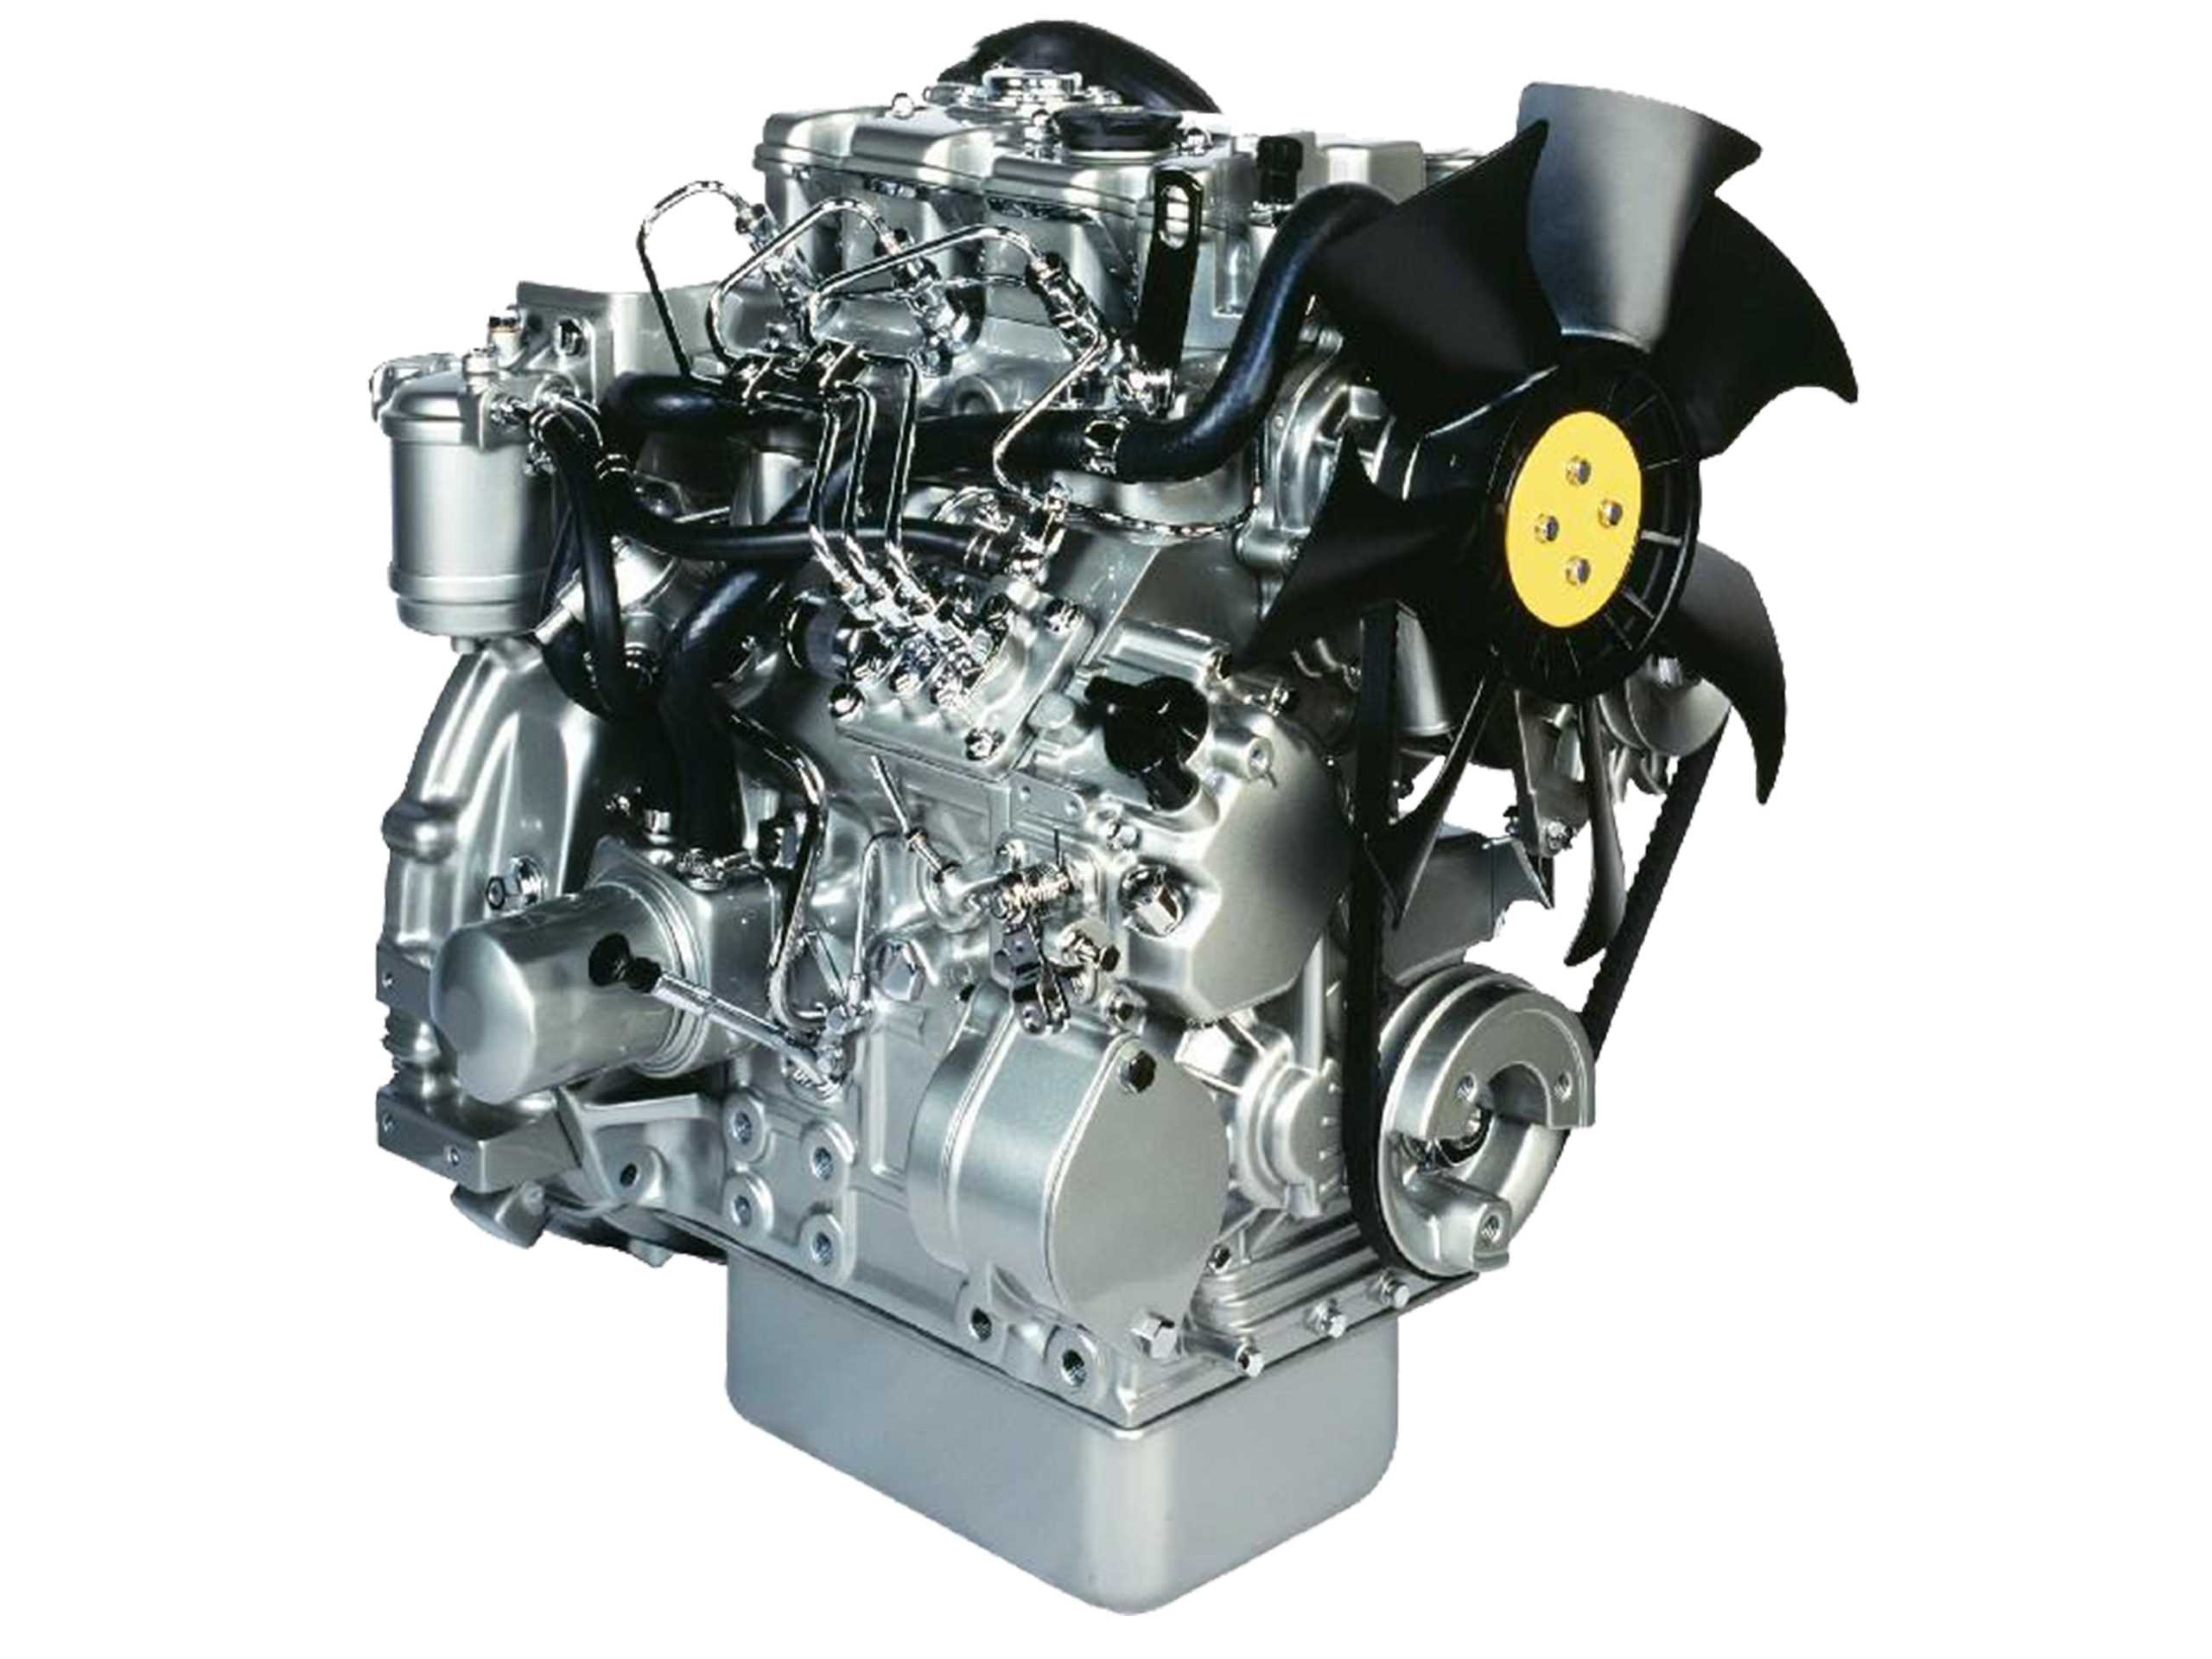 Сайт дизель. Двигатель Perkins 403d-15. Двигатель Perkins 403d. Perkins 403d-07g. Моторы Перкинс дизельные.